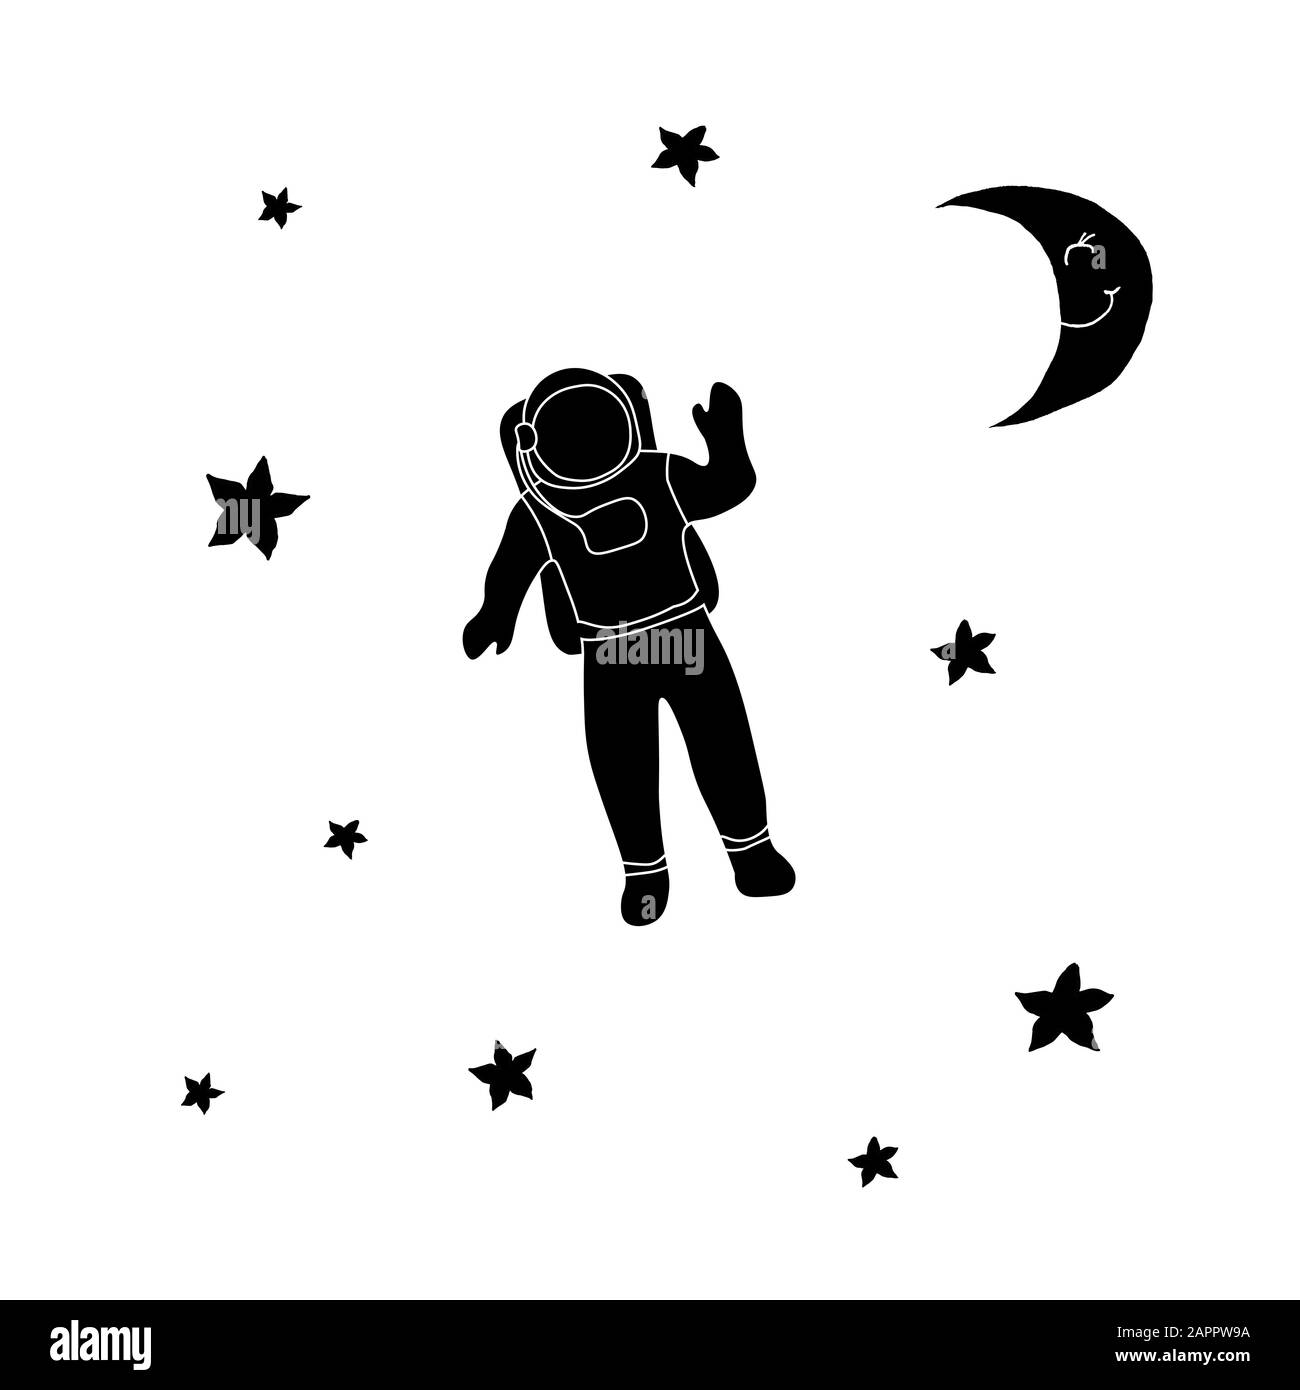 Astronaute cosmonaute, lune et étoiles. Contour noir sur fond blanc. L'image peut être utilisée dans les cartes de vœux, les affiches, les dépliants, les bannières, le logo, la conception supplémentaire, etc. Illustration vectorielle. EPS10 Illustration de Vecteur